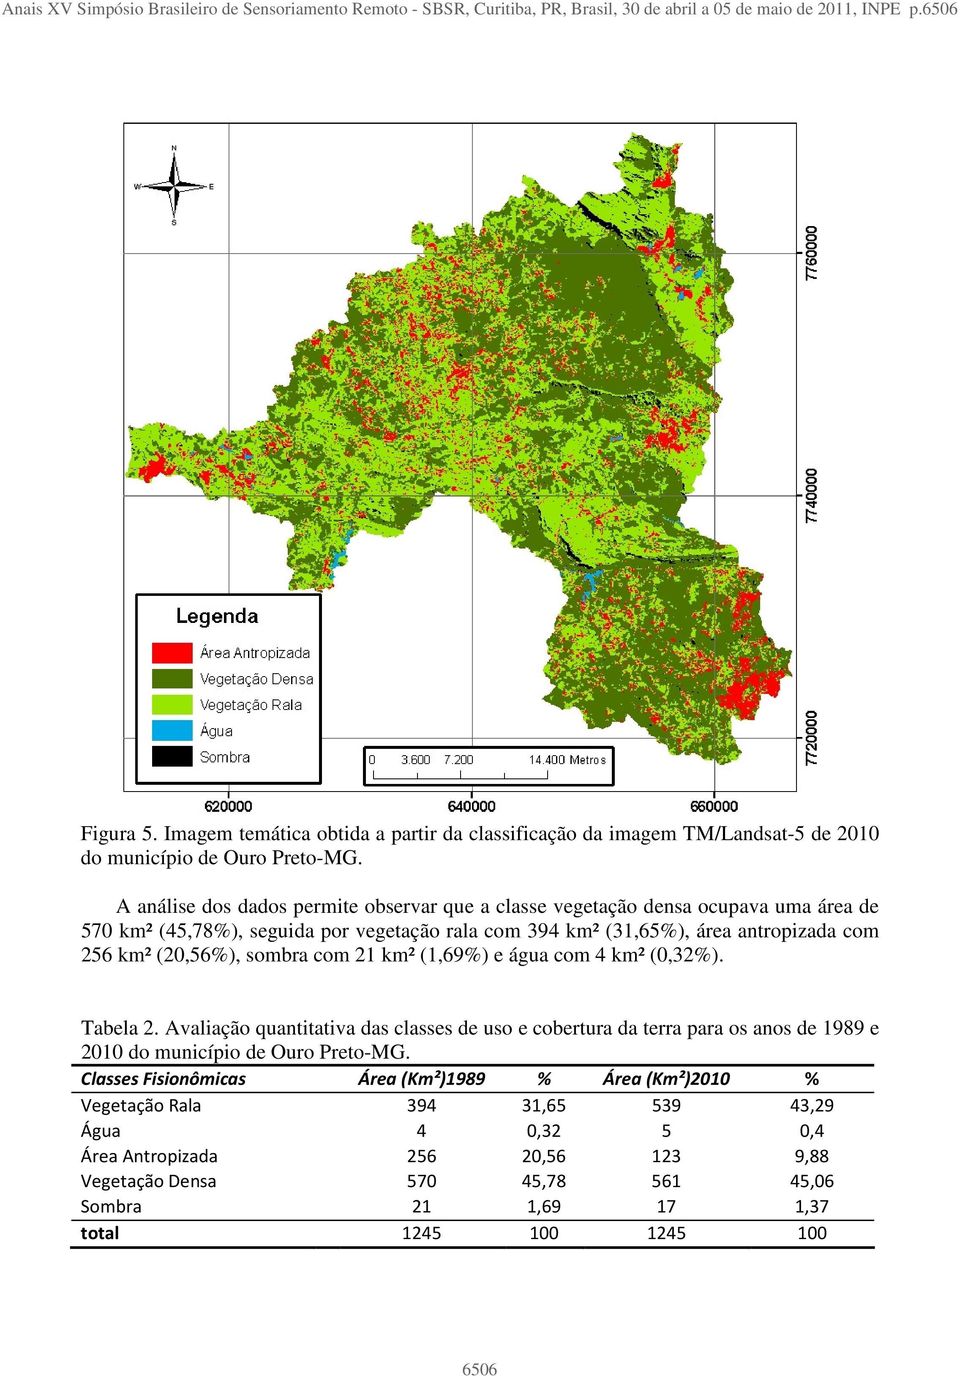 A análise dos dados permite observar que a classe vegetação densa ocupava uma área de 570 km² (45,78%), seguida por vegetação rala com 394 km² (31,65%), área antropizada com 256 km² (20,56%), sombra